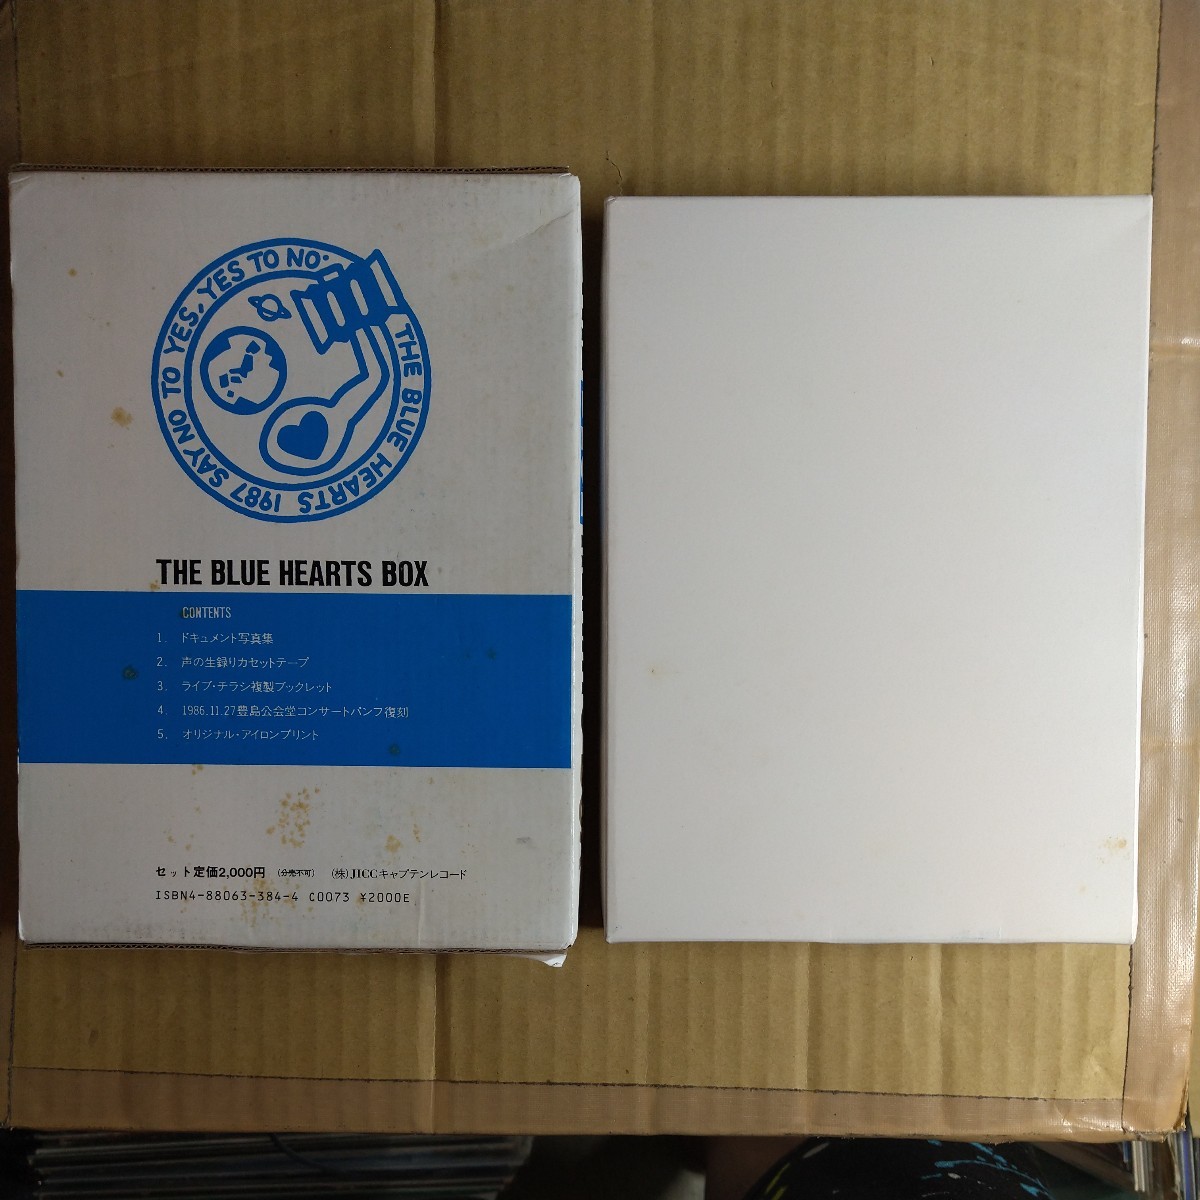  The * Blue Hearts [ THE BLUE HEARTS BOX] кассета книжка 1987 год закончившийся товар ** хлеб часы punk "Остров сокровищ" jic Captain запись черный maniyonz